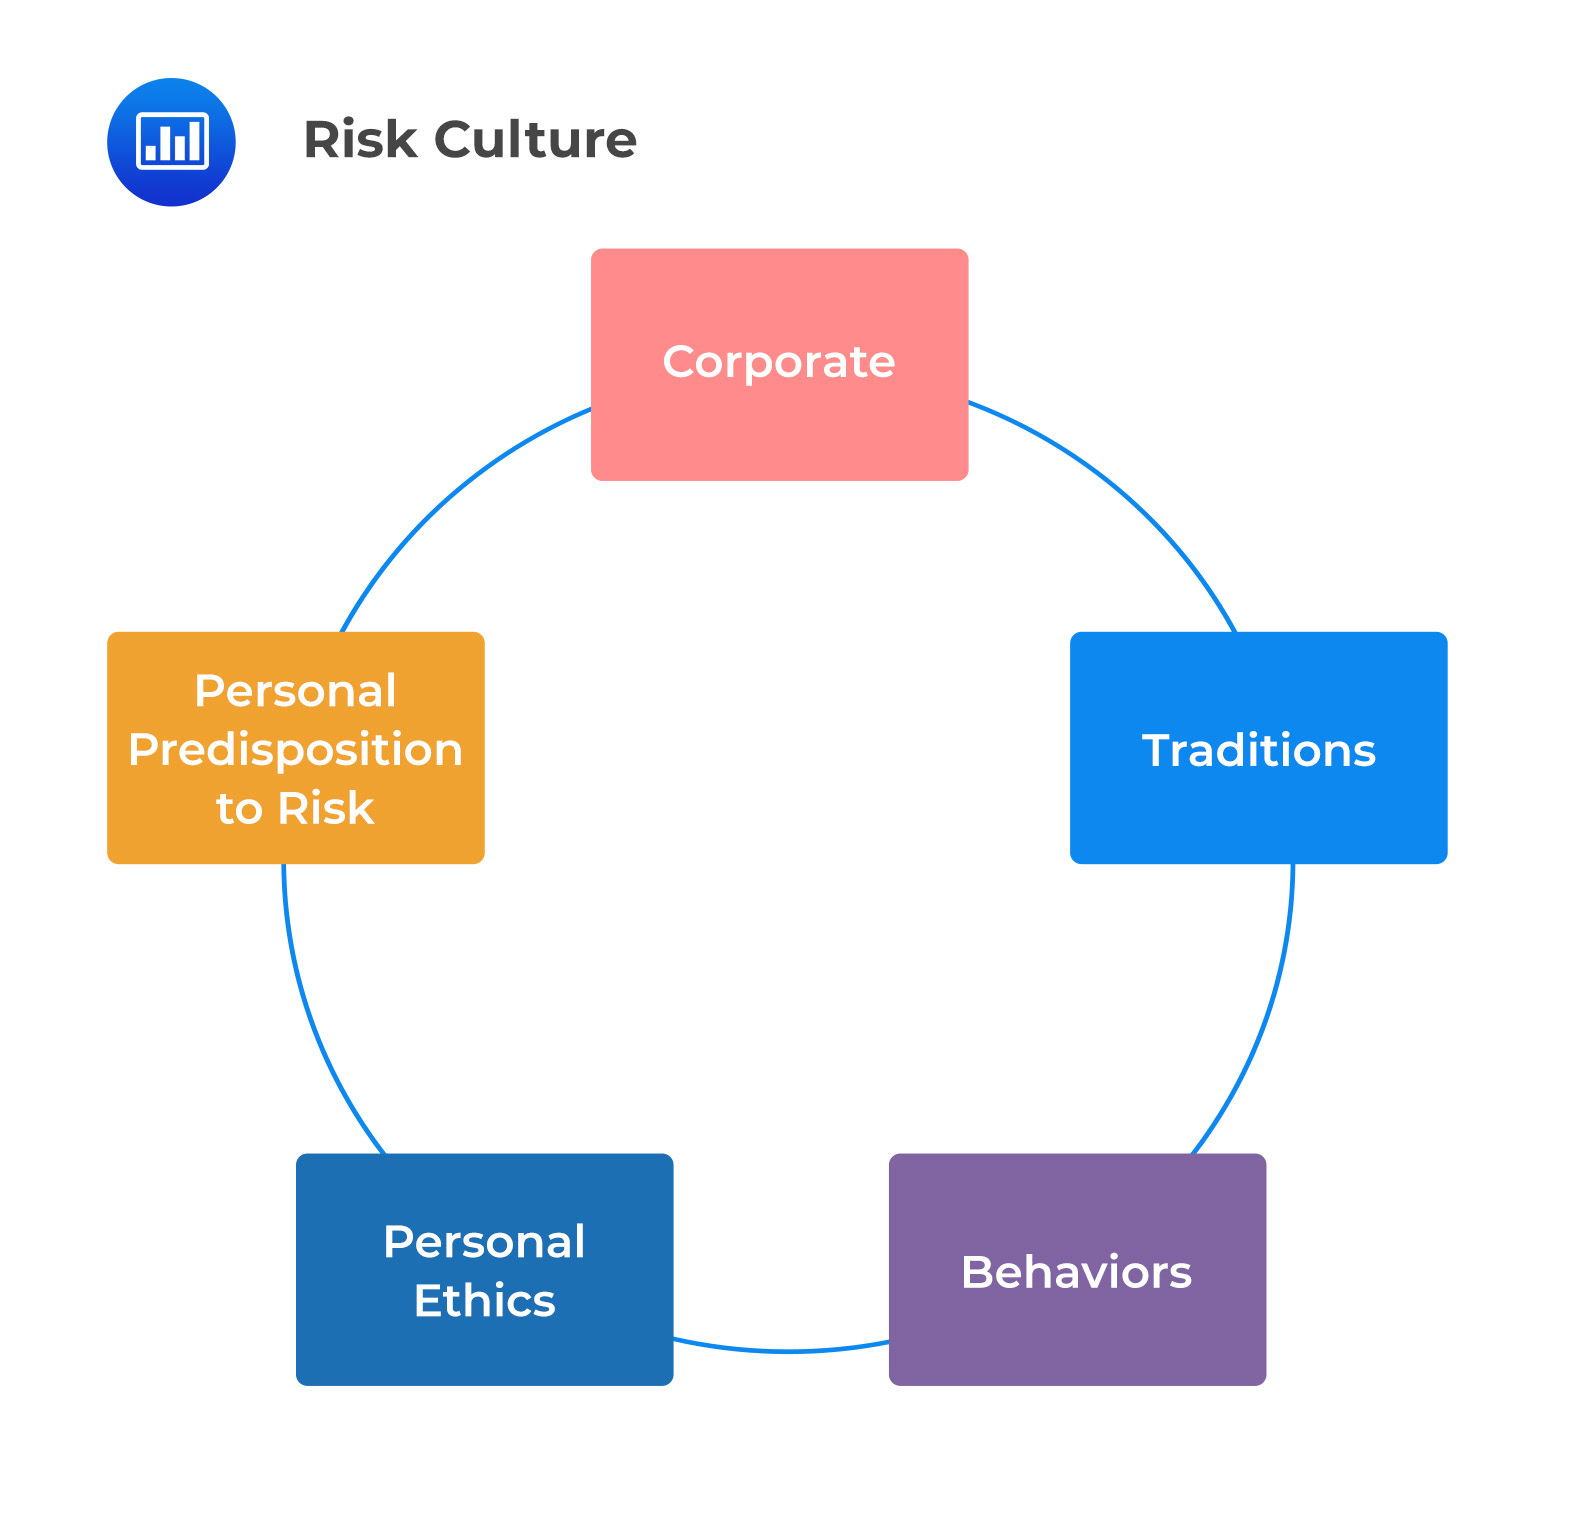 Risk culture